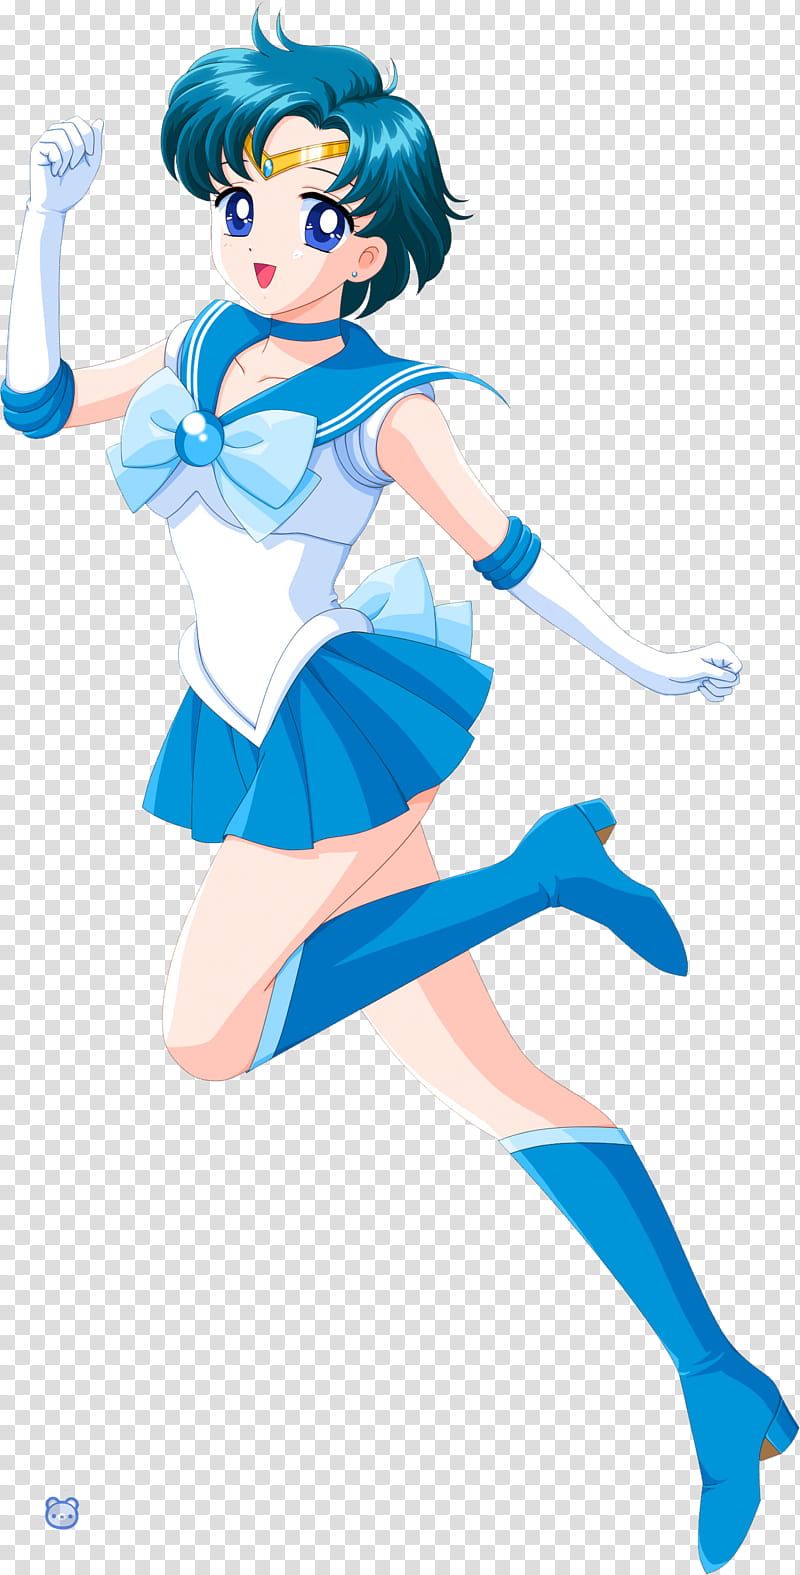 Sailor Mercury transparent background PNG clipart